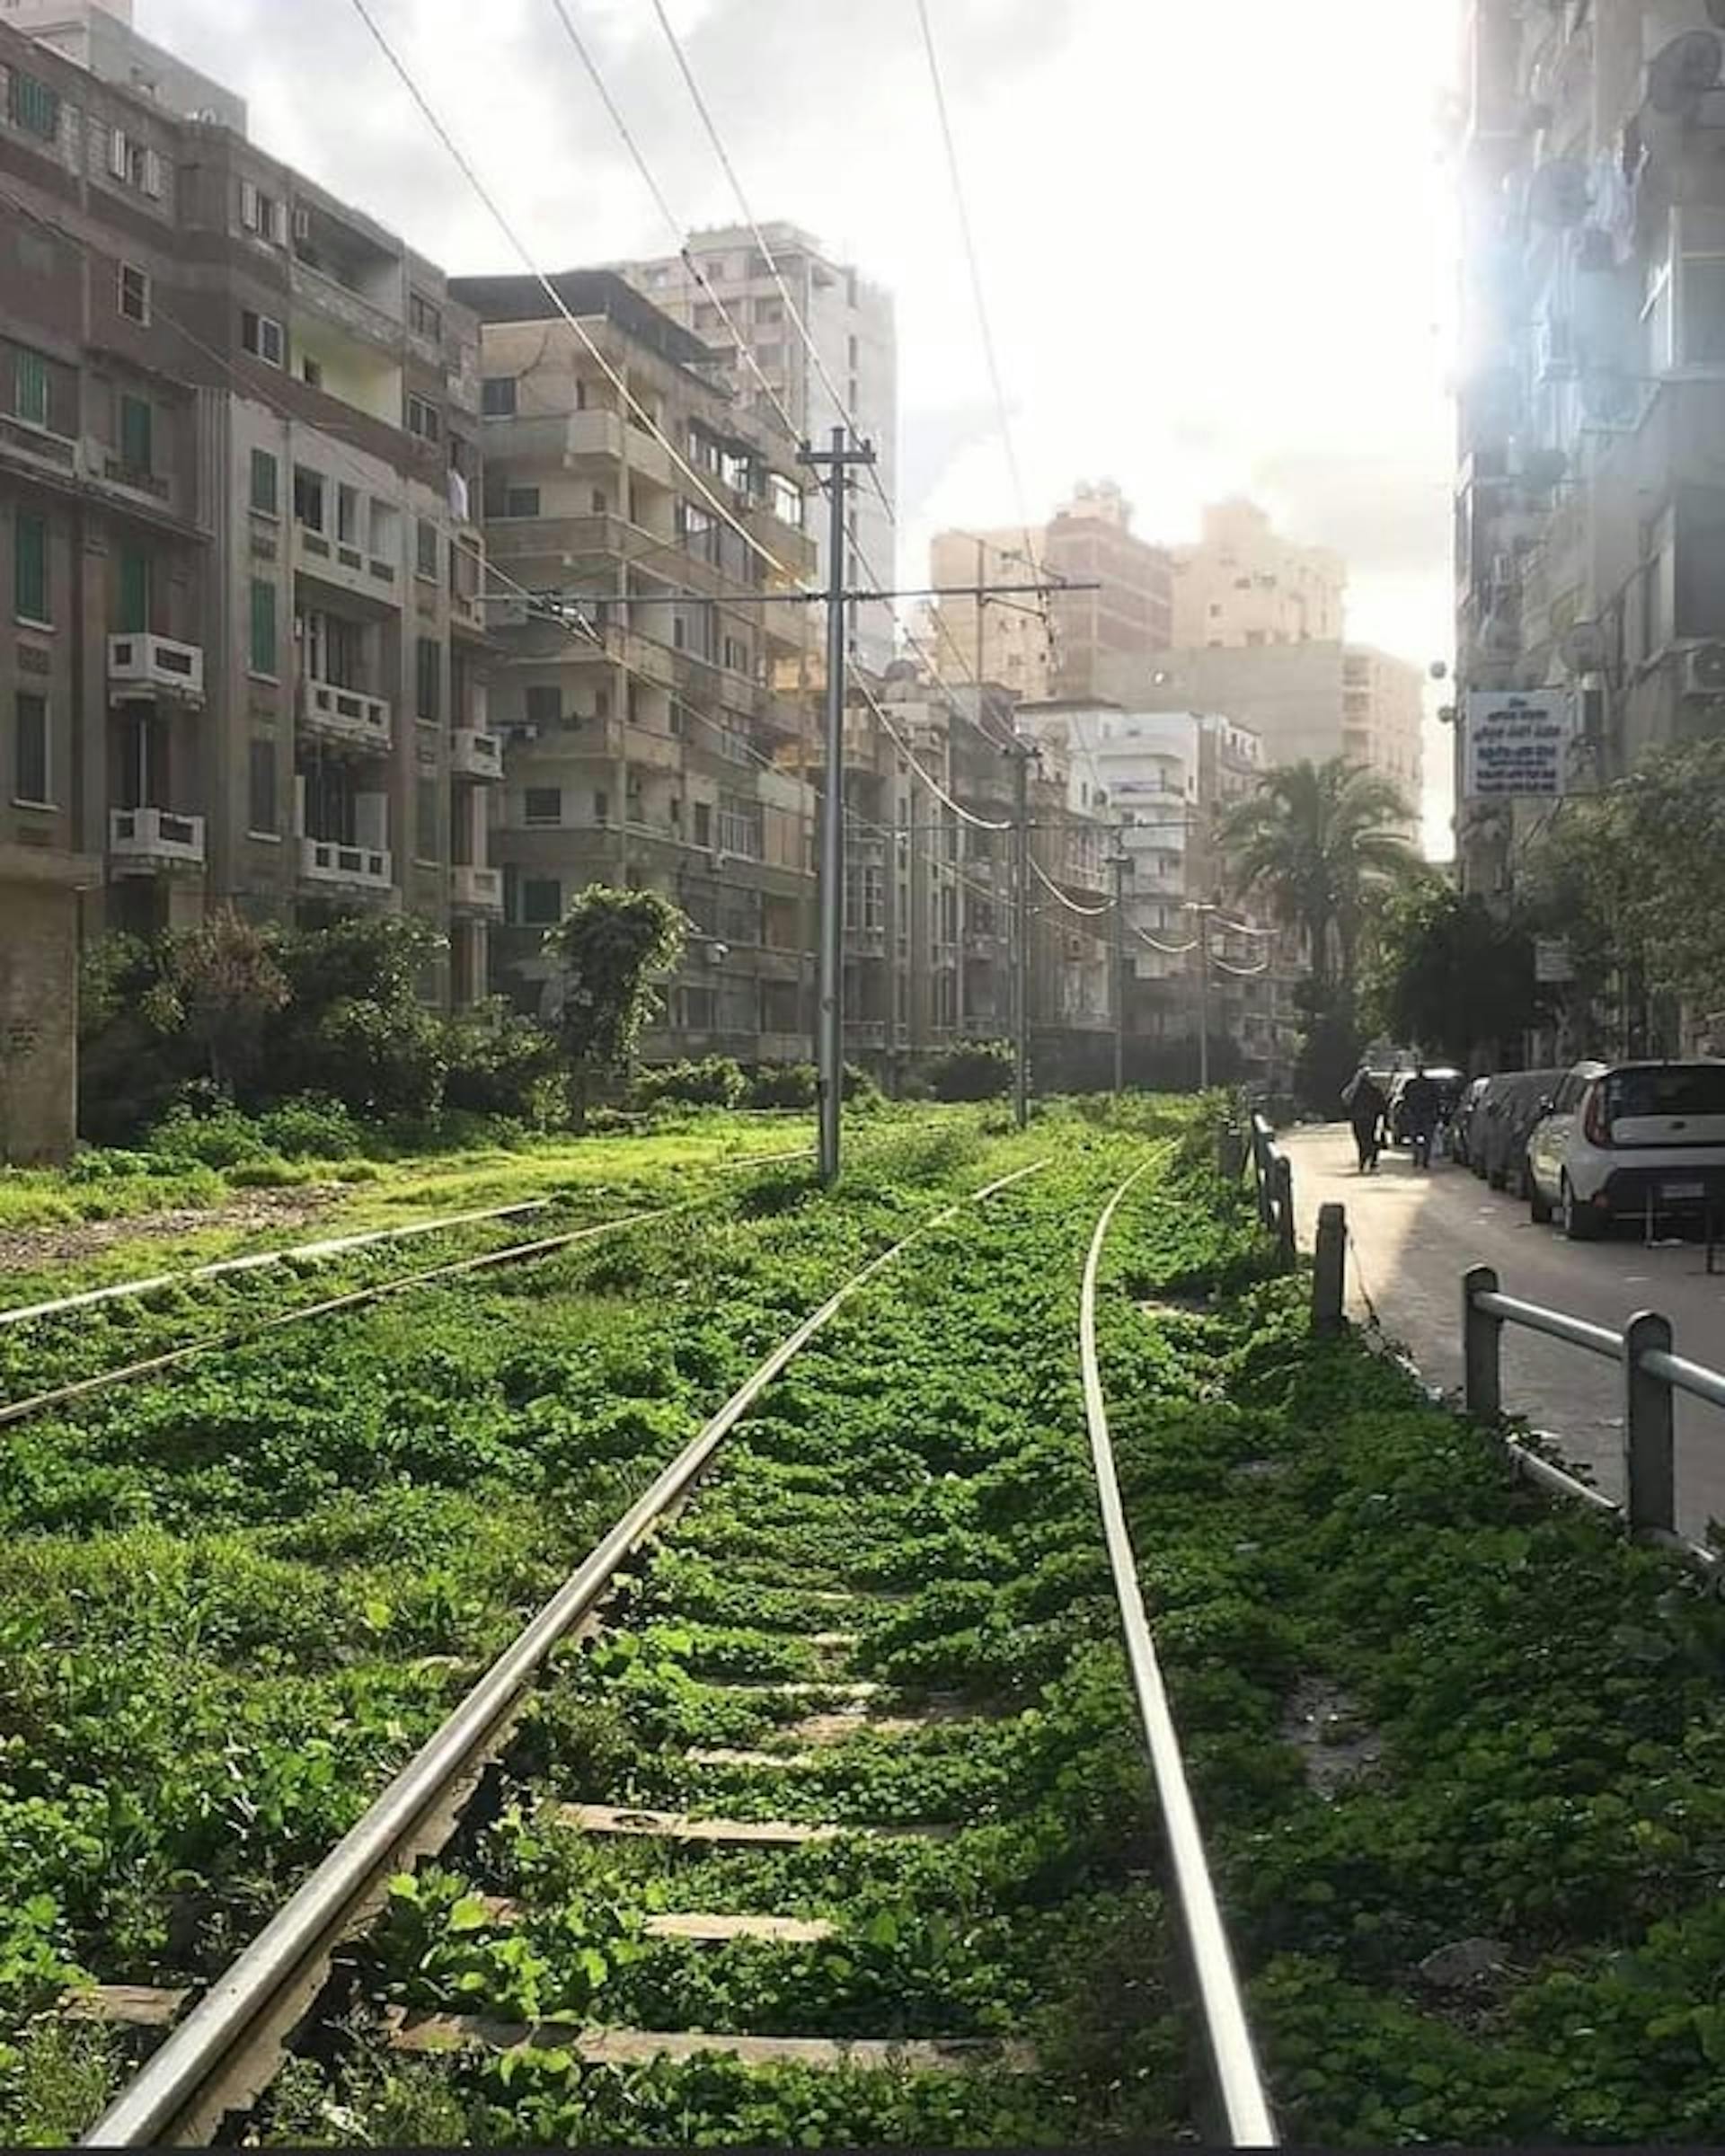 Eine Straßenbahnstrecke in Alexandria, gepostet von u/Different-Giraffe255 auf r/Egypt. (https://www.reddit.com/r/Egypt/comments/1152219/a_tram_track_in_alexandria/)